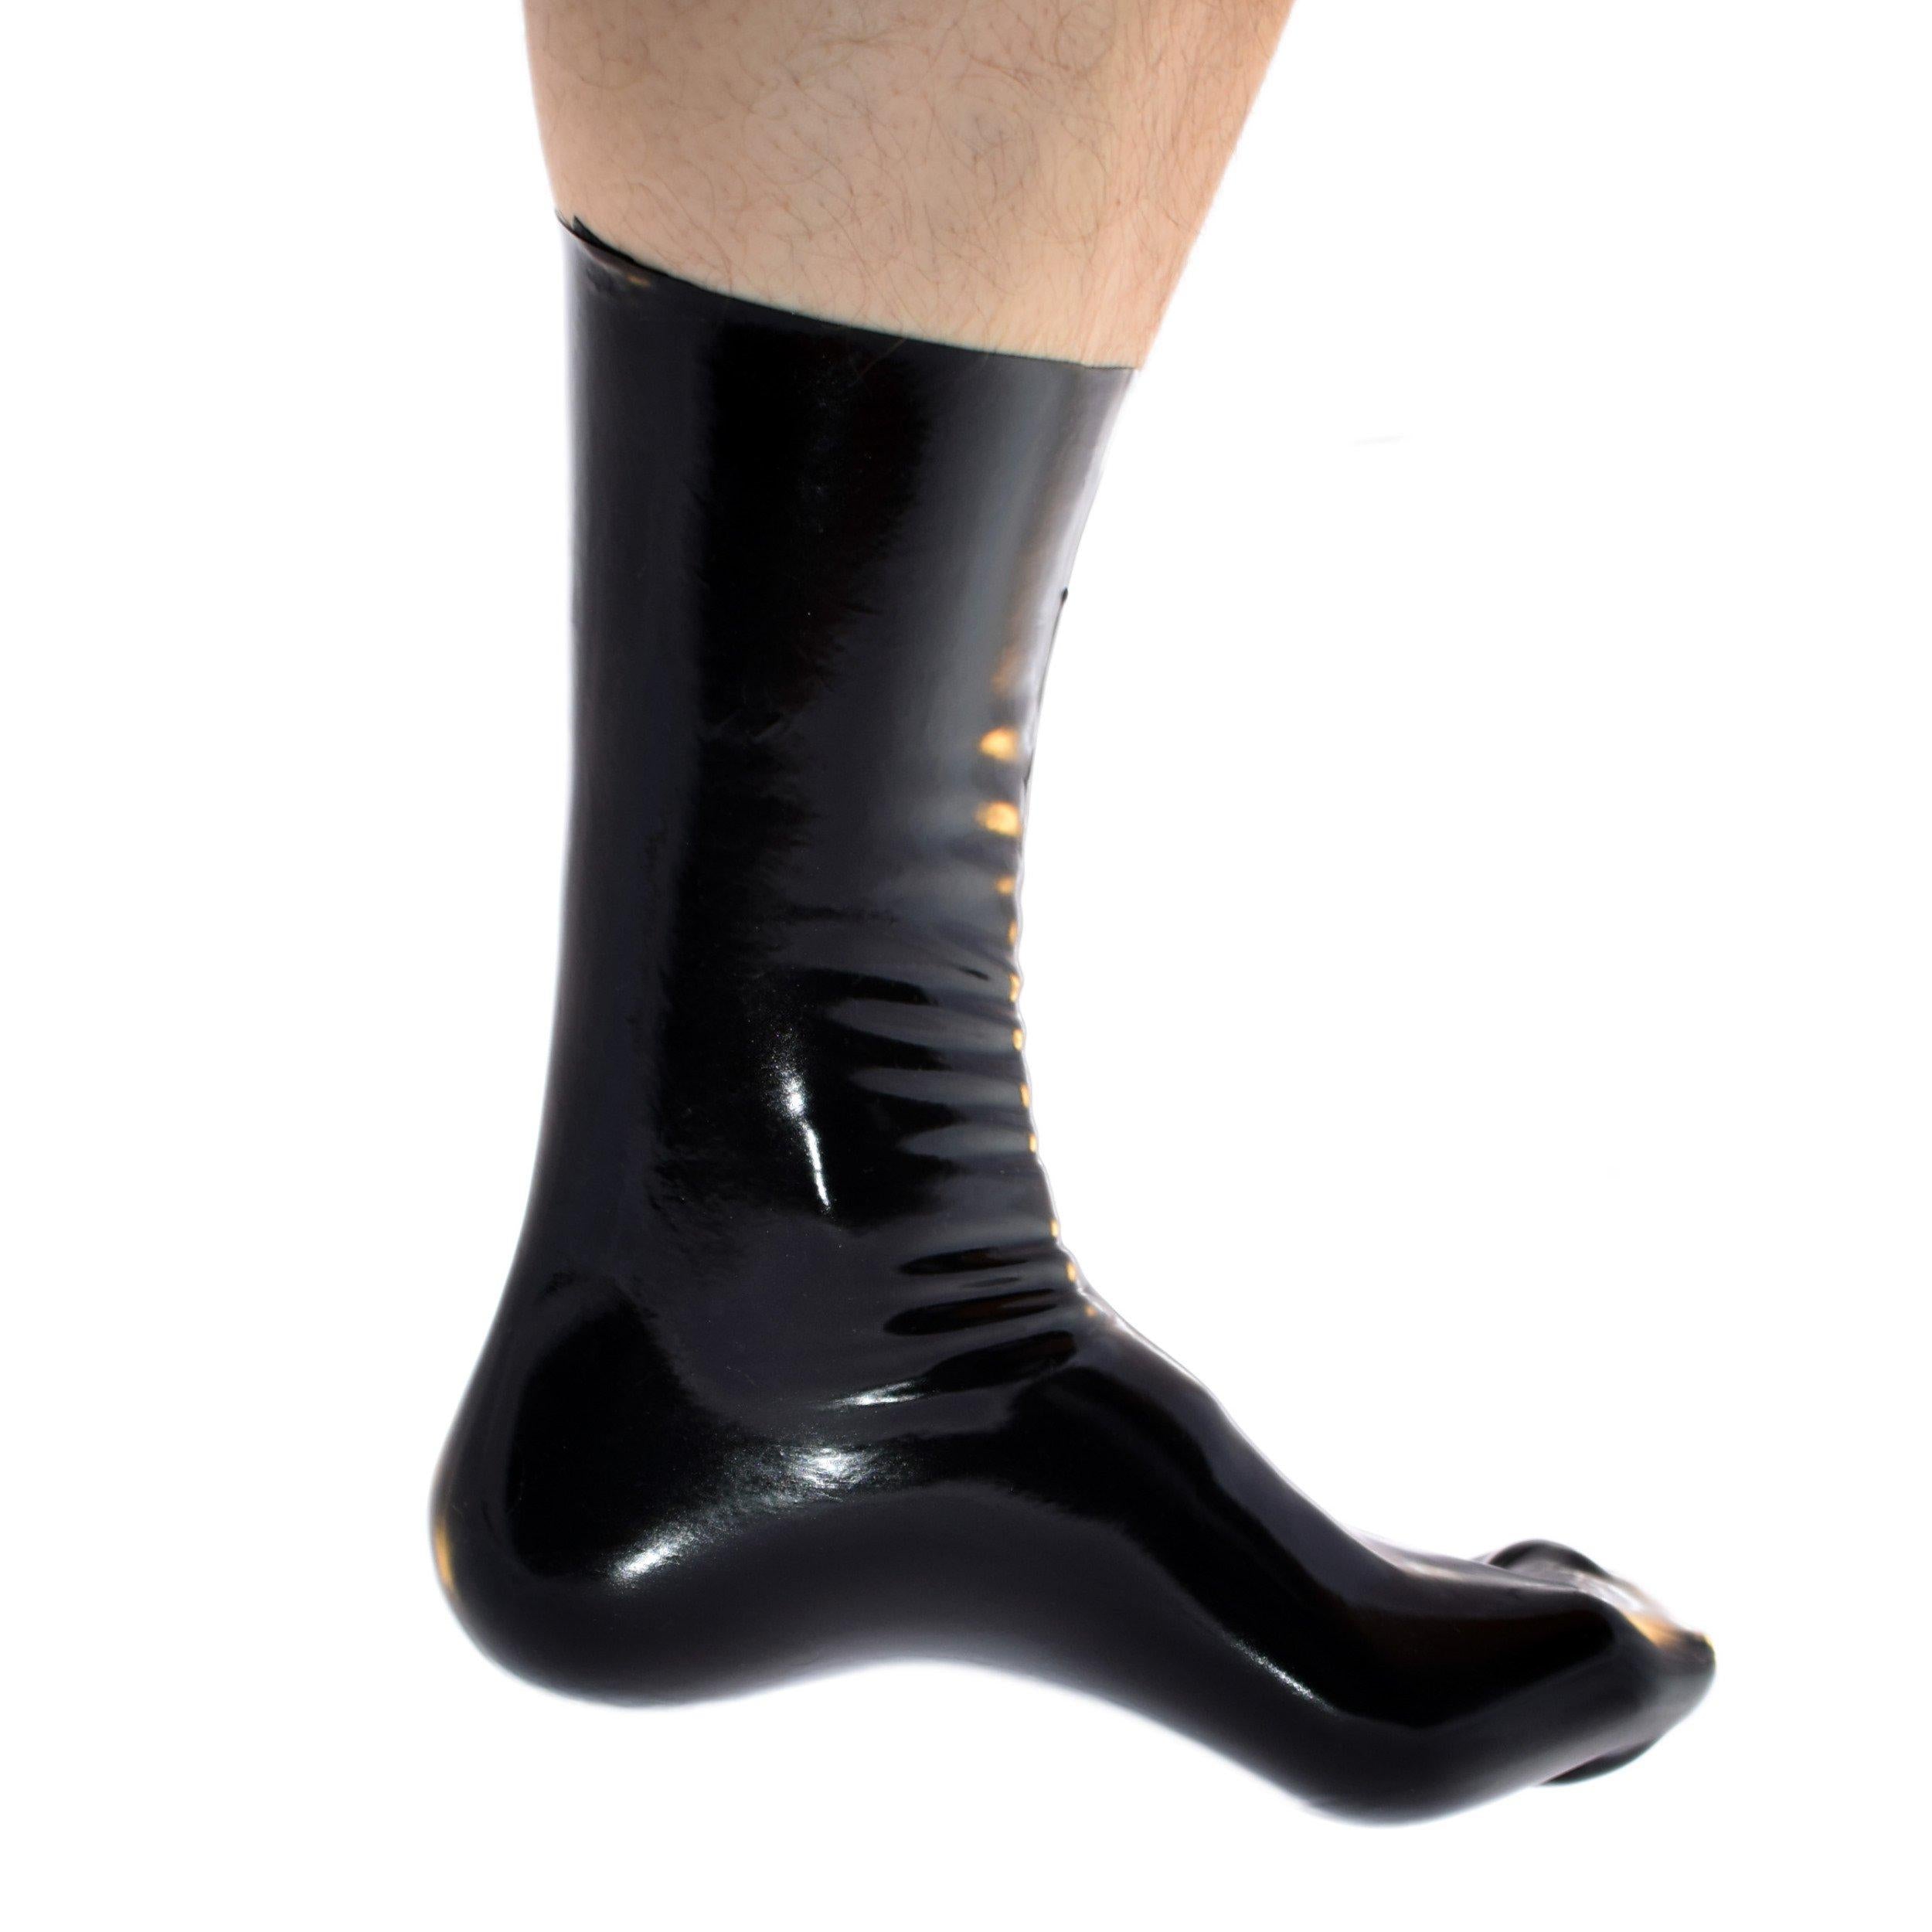 Rubberfashion Sexy Latex Socken kurz - Rubber Latexsocken Knöchel lang - Latex Strümpfe für Damen und Herren